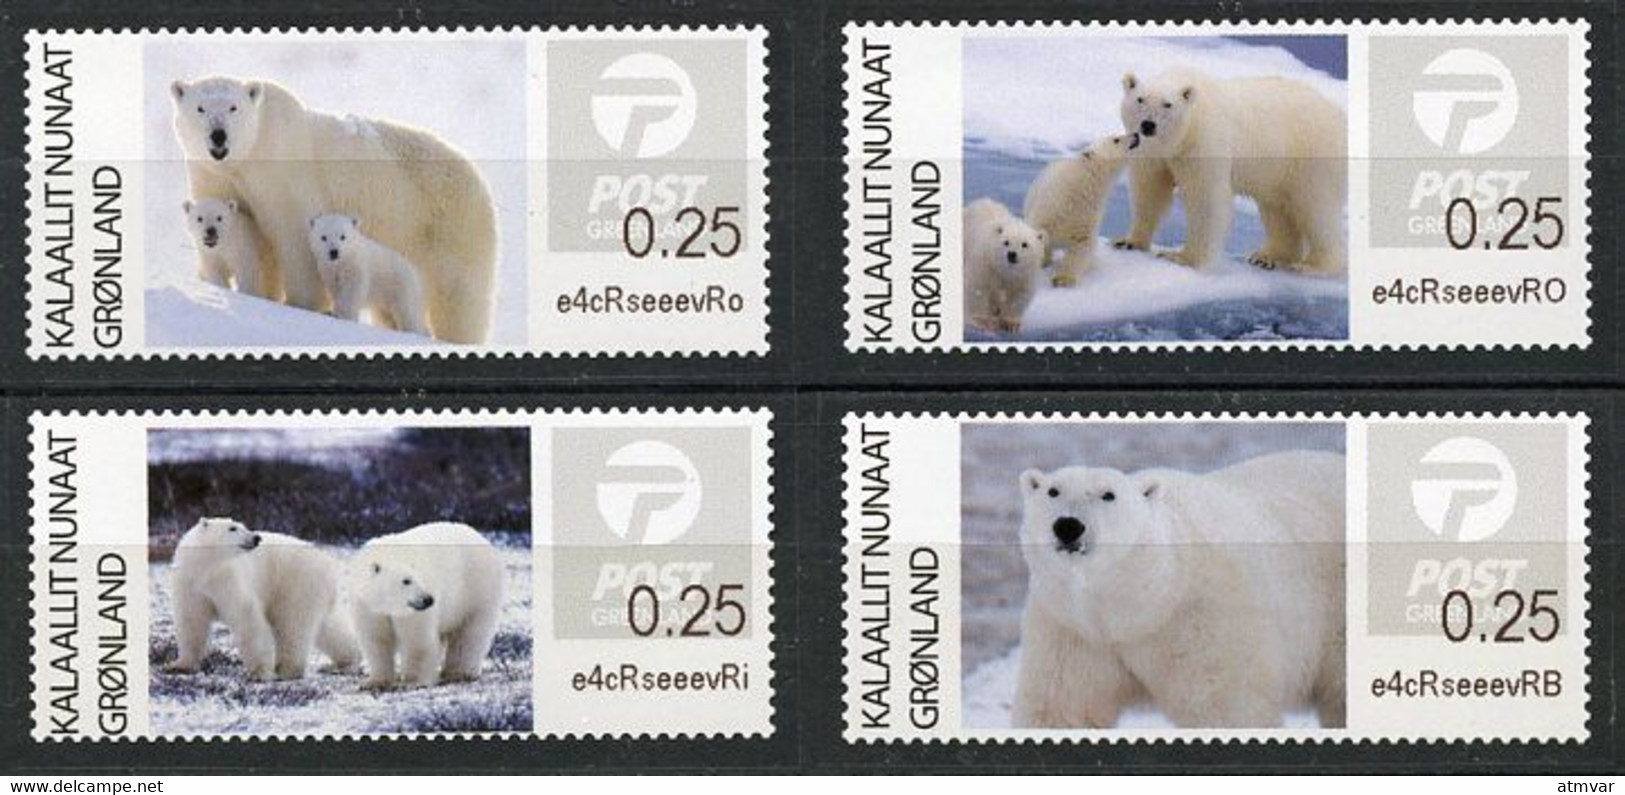 GREENLAND GROENLAND (2019) - ATM Series - Polar Bears, Der Eisbär, Ours Blanc, Oso Polar (Ursus Thalarctos Maritimus) - Machine Stamps